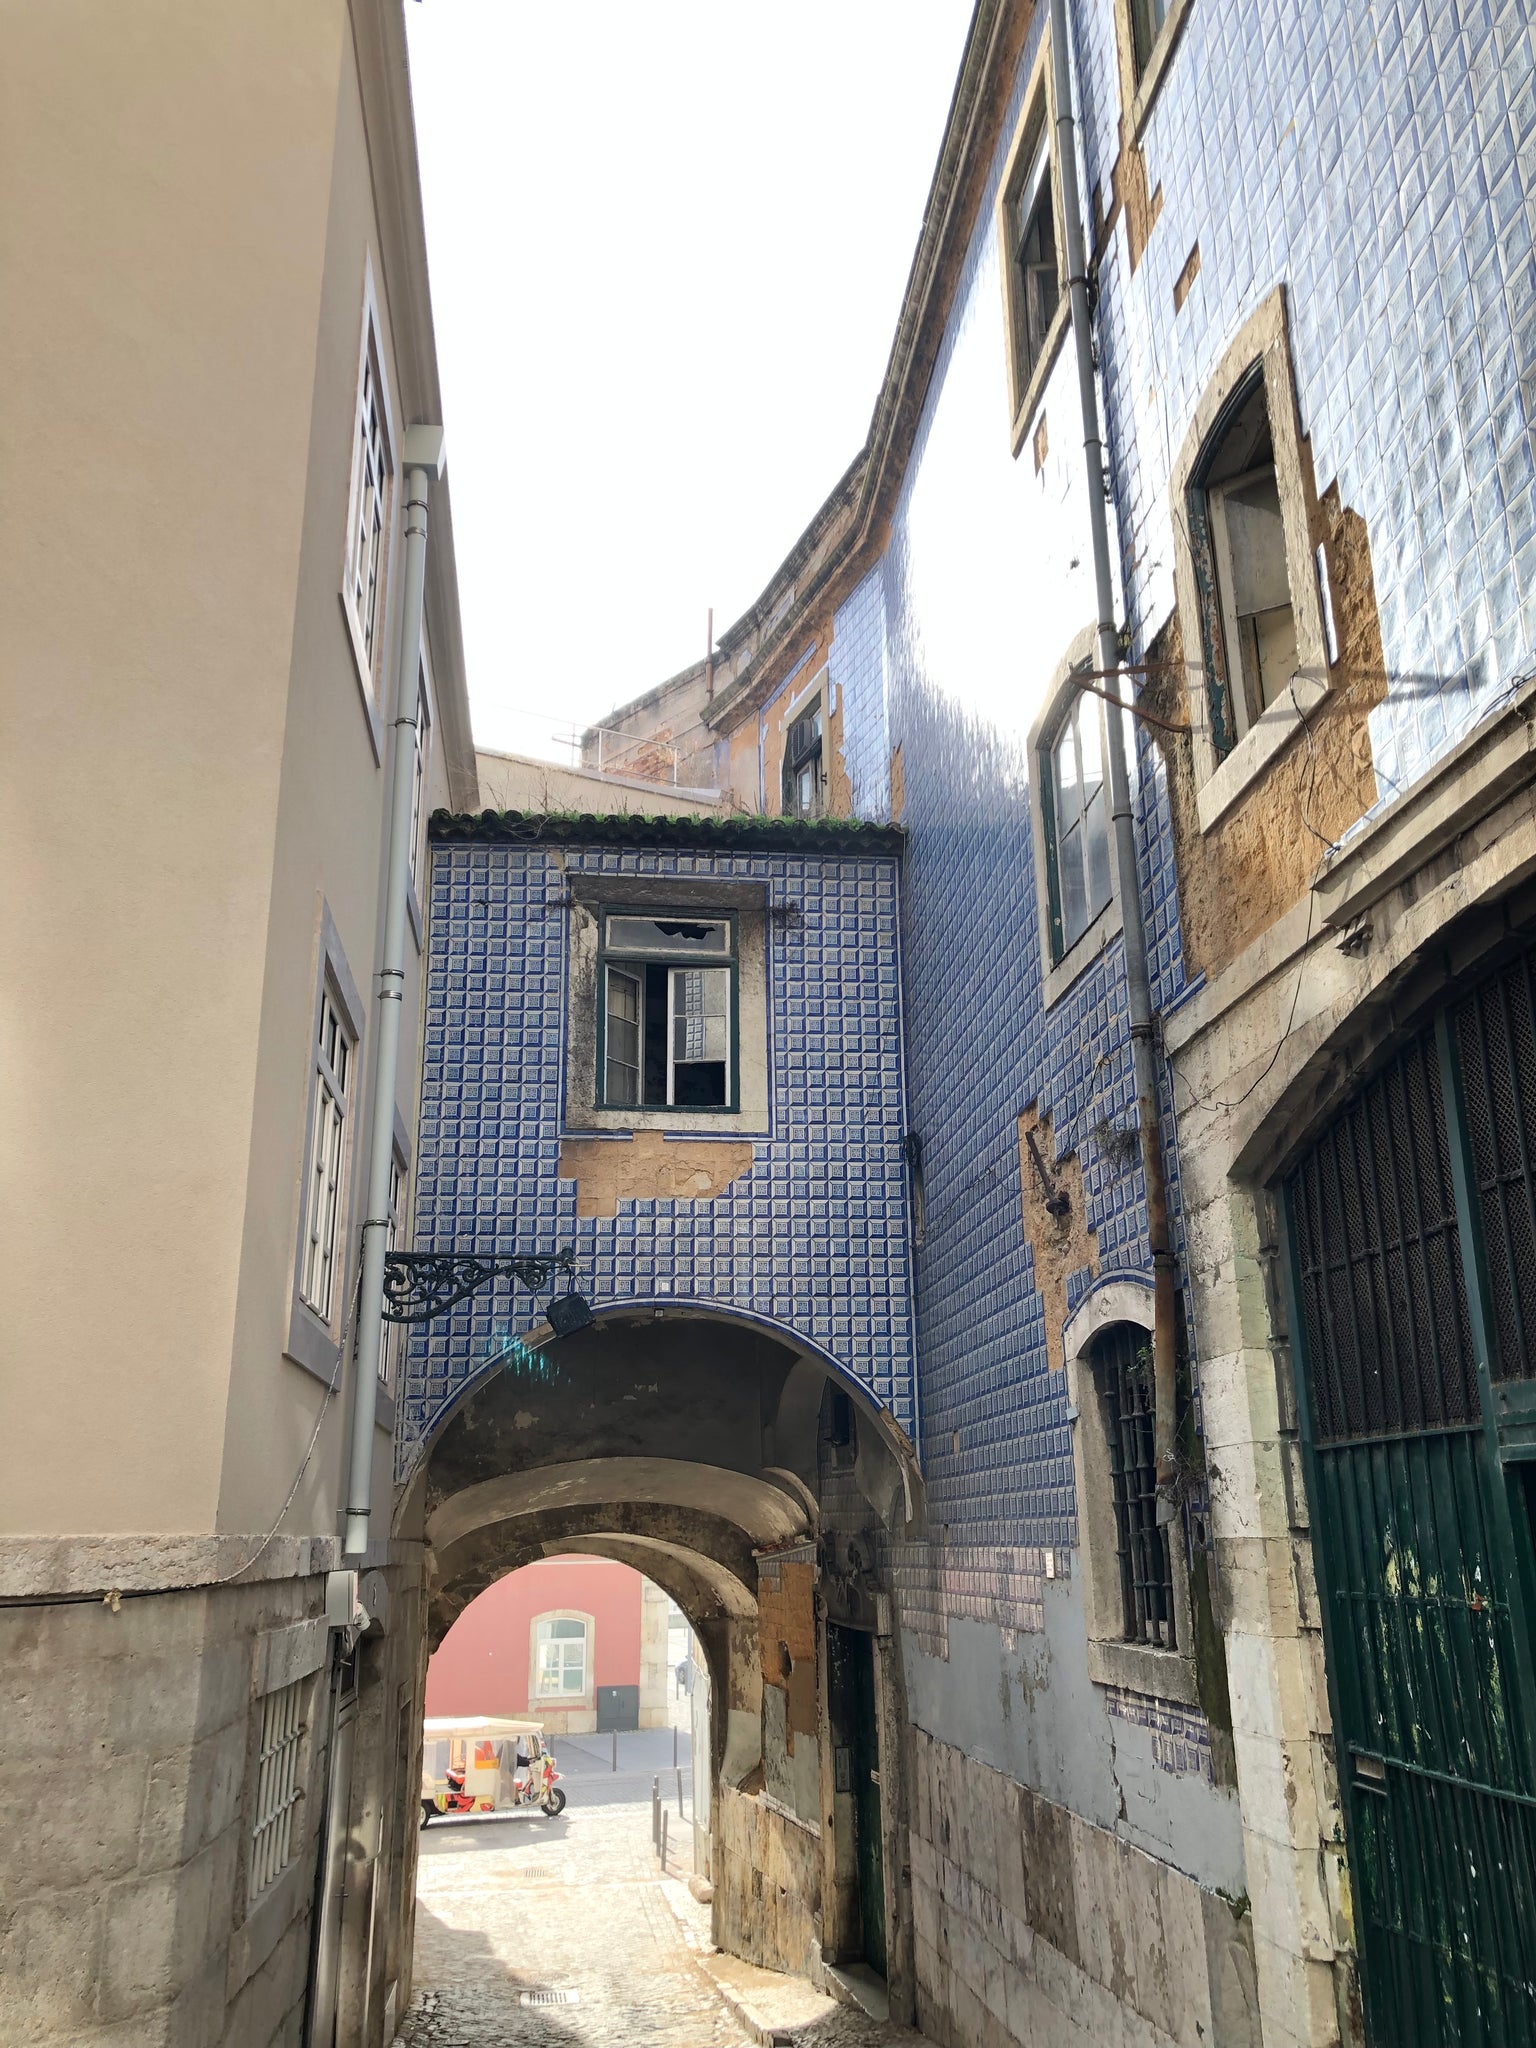 First blog post ever! A bit about Lisbon.